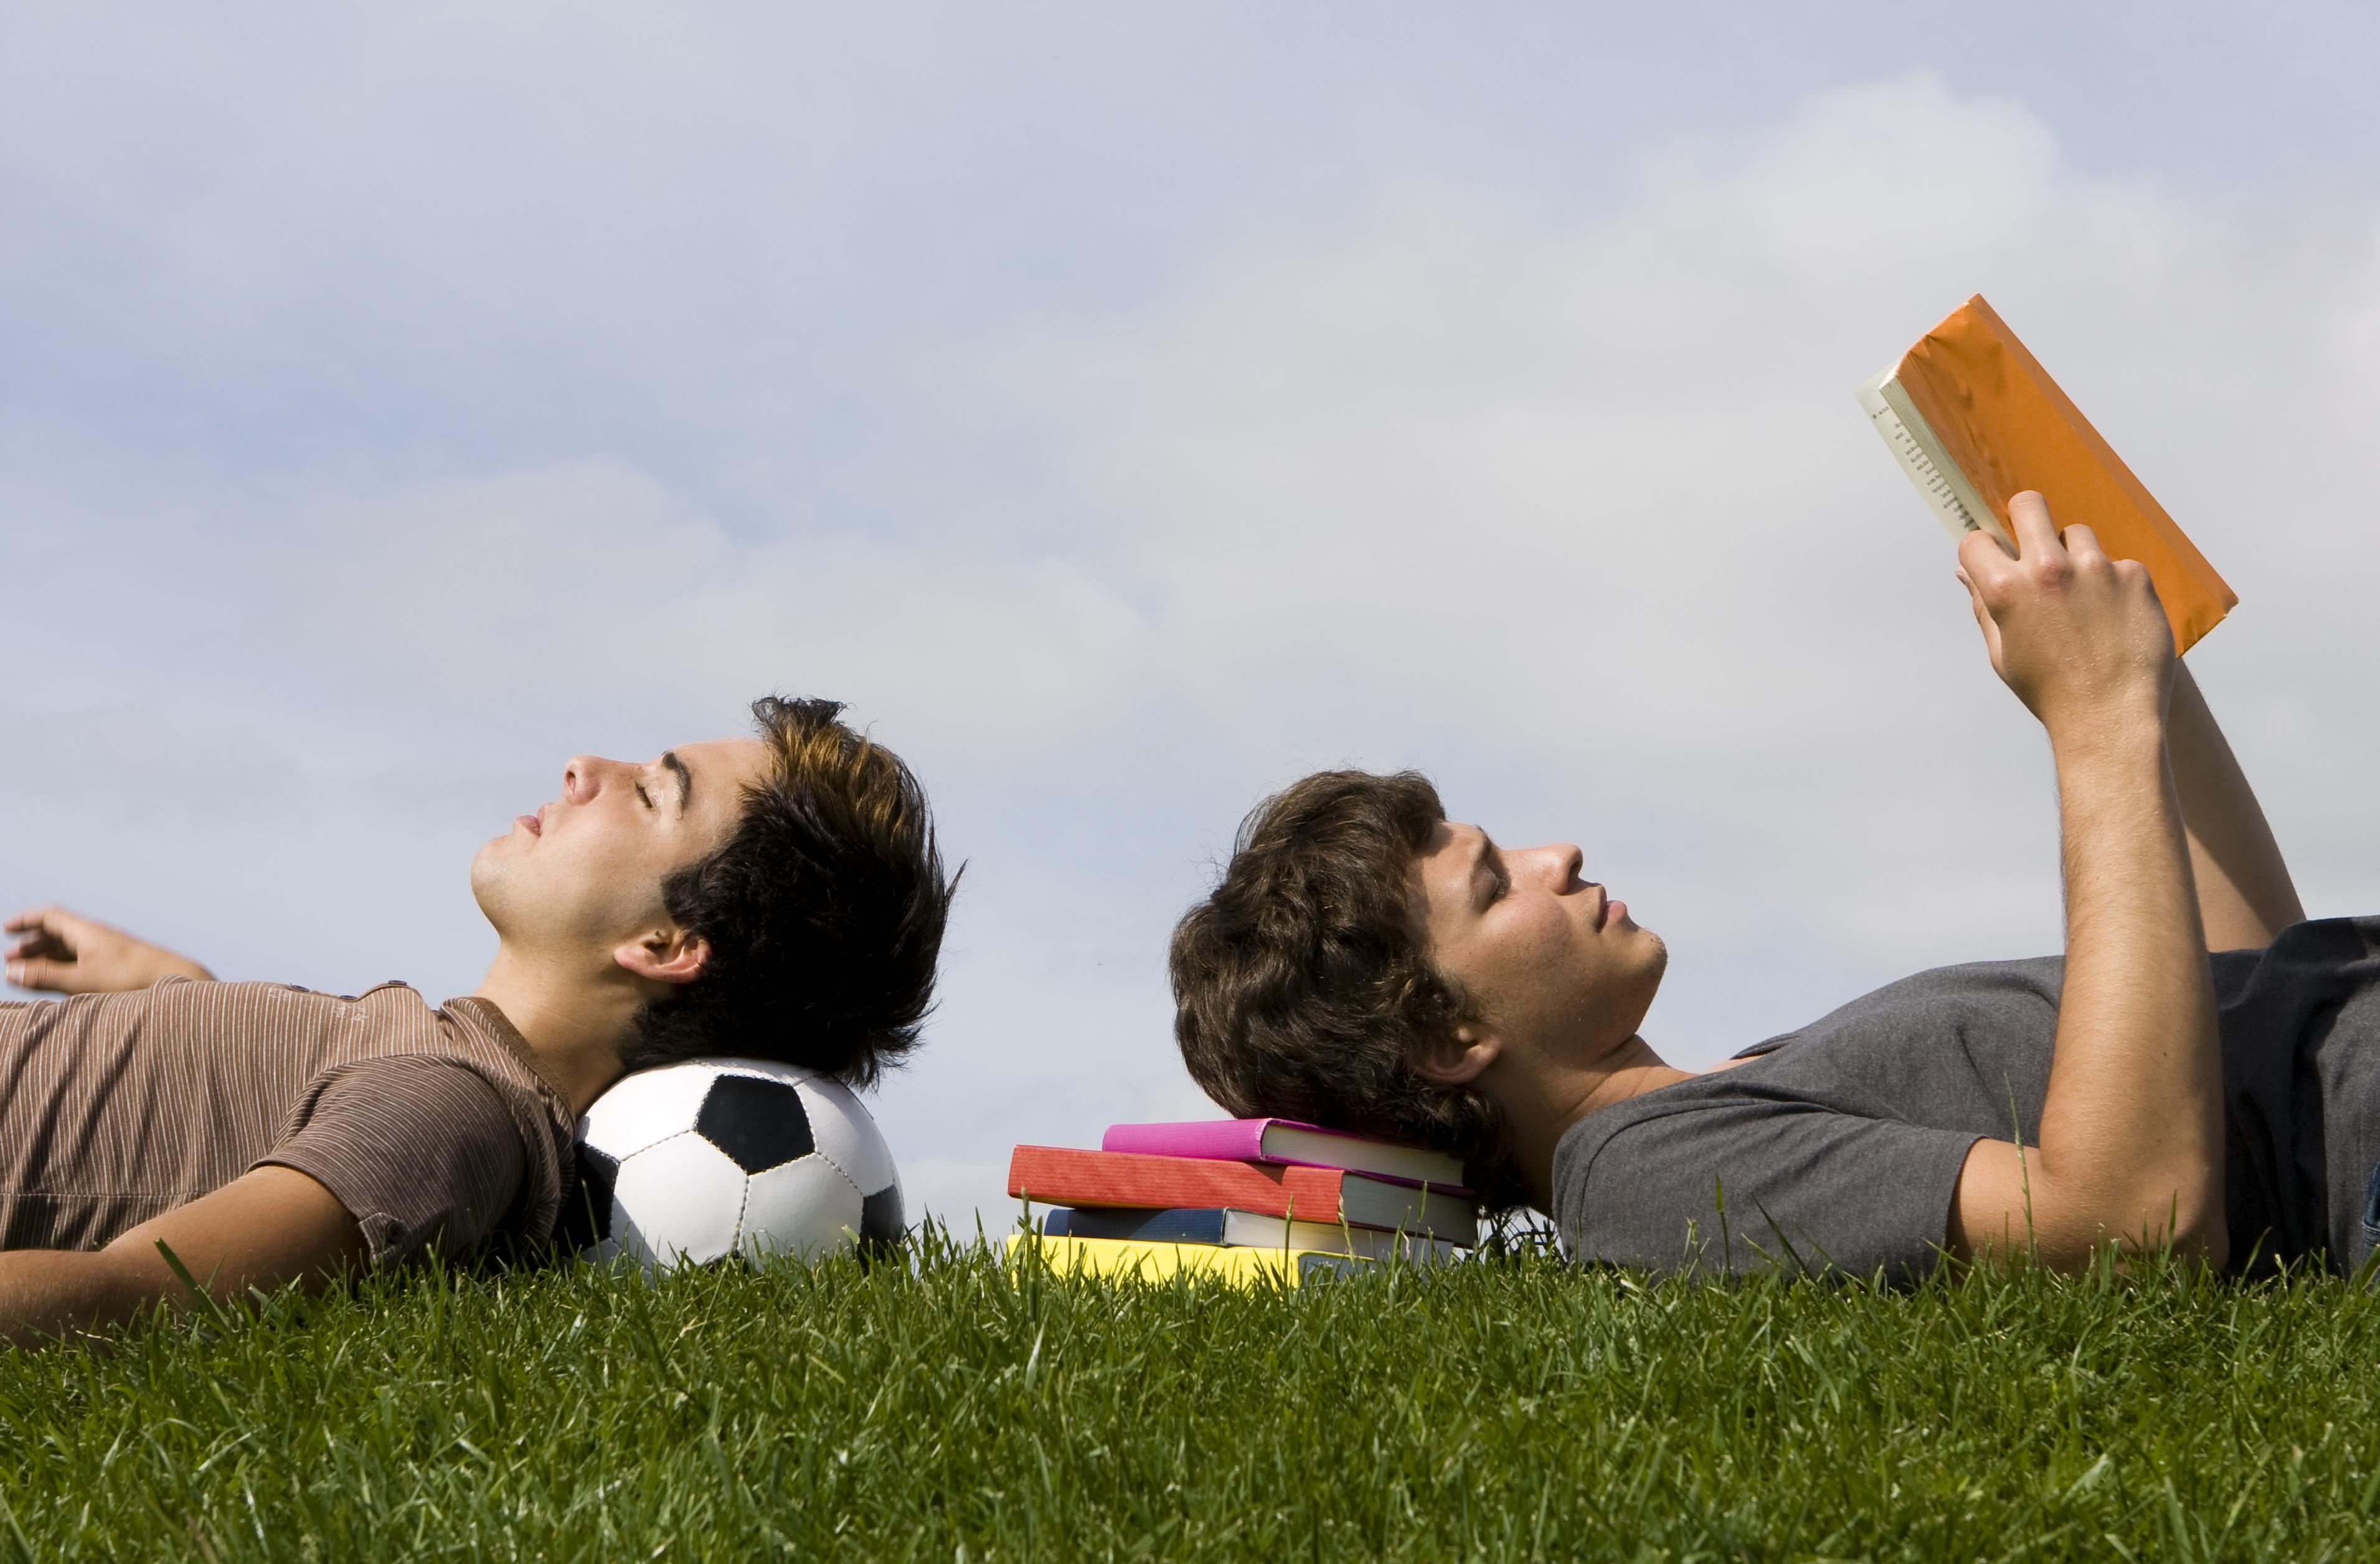 Чтение в жизни подростка. Человек отдыхает. Спорт и учеба. Активные увлечения. Студенты на отдыхе.